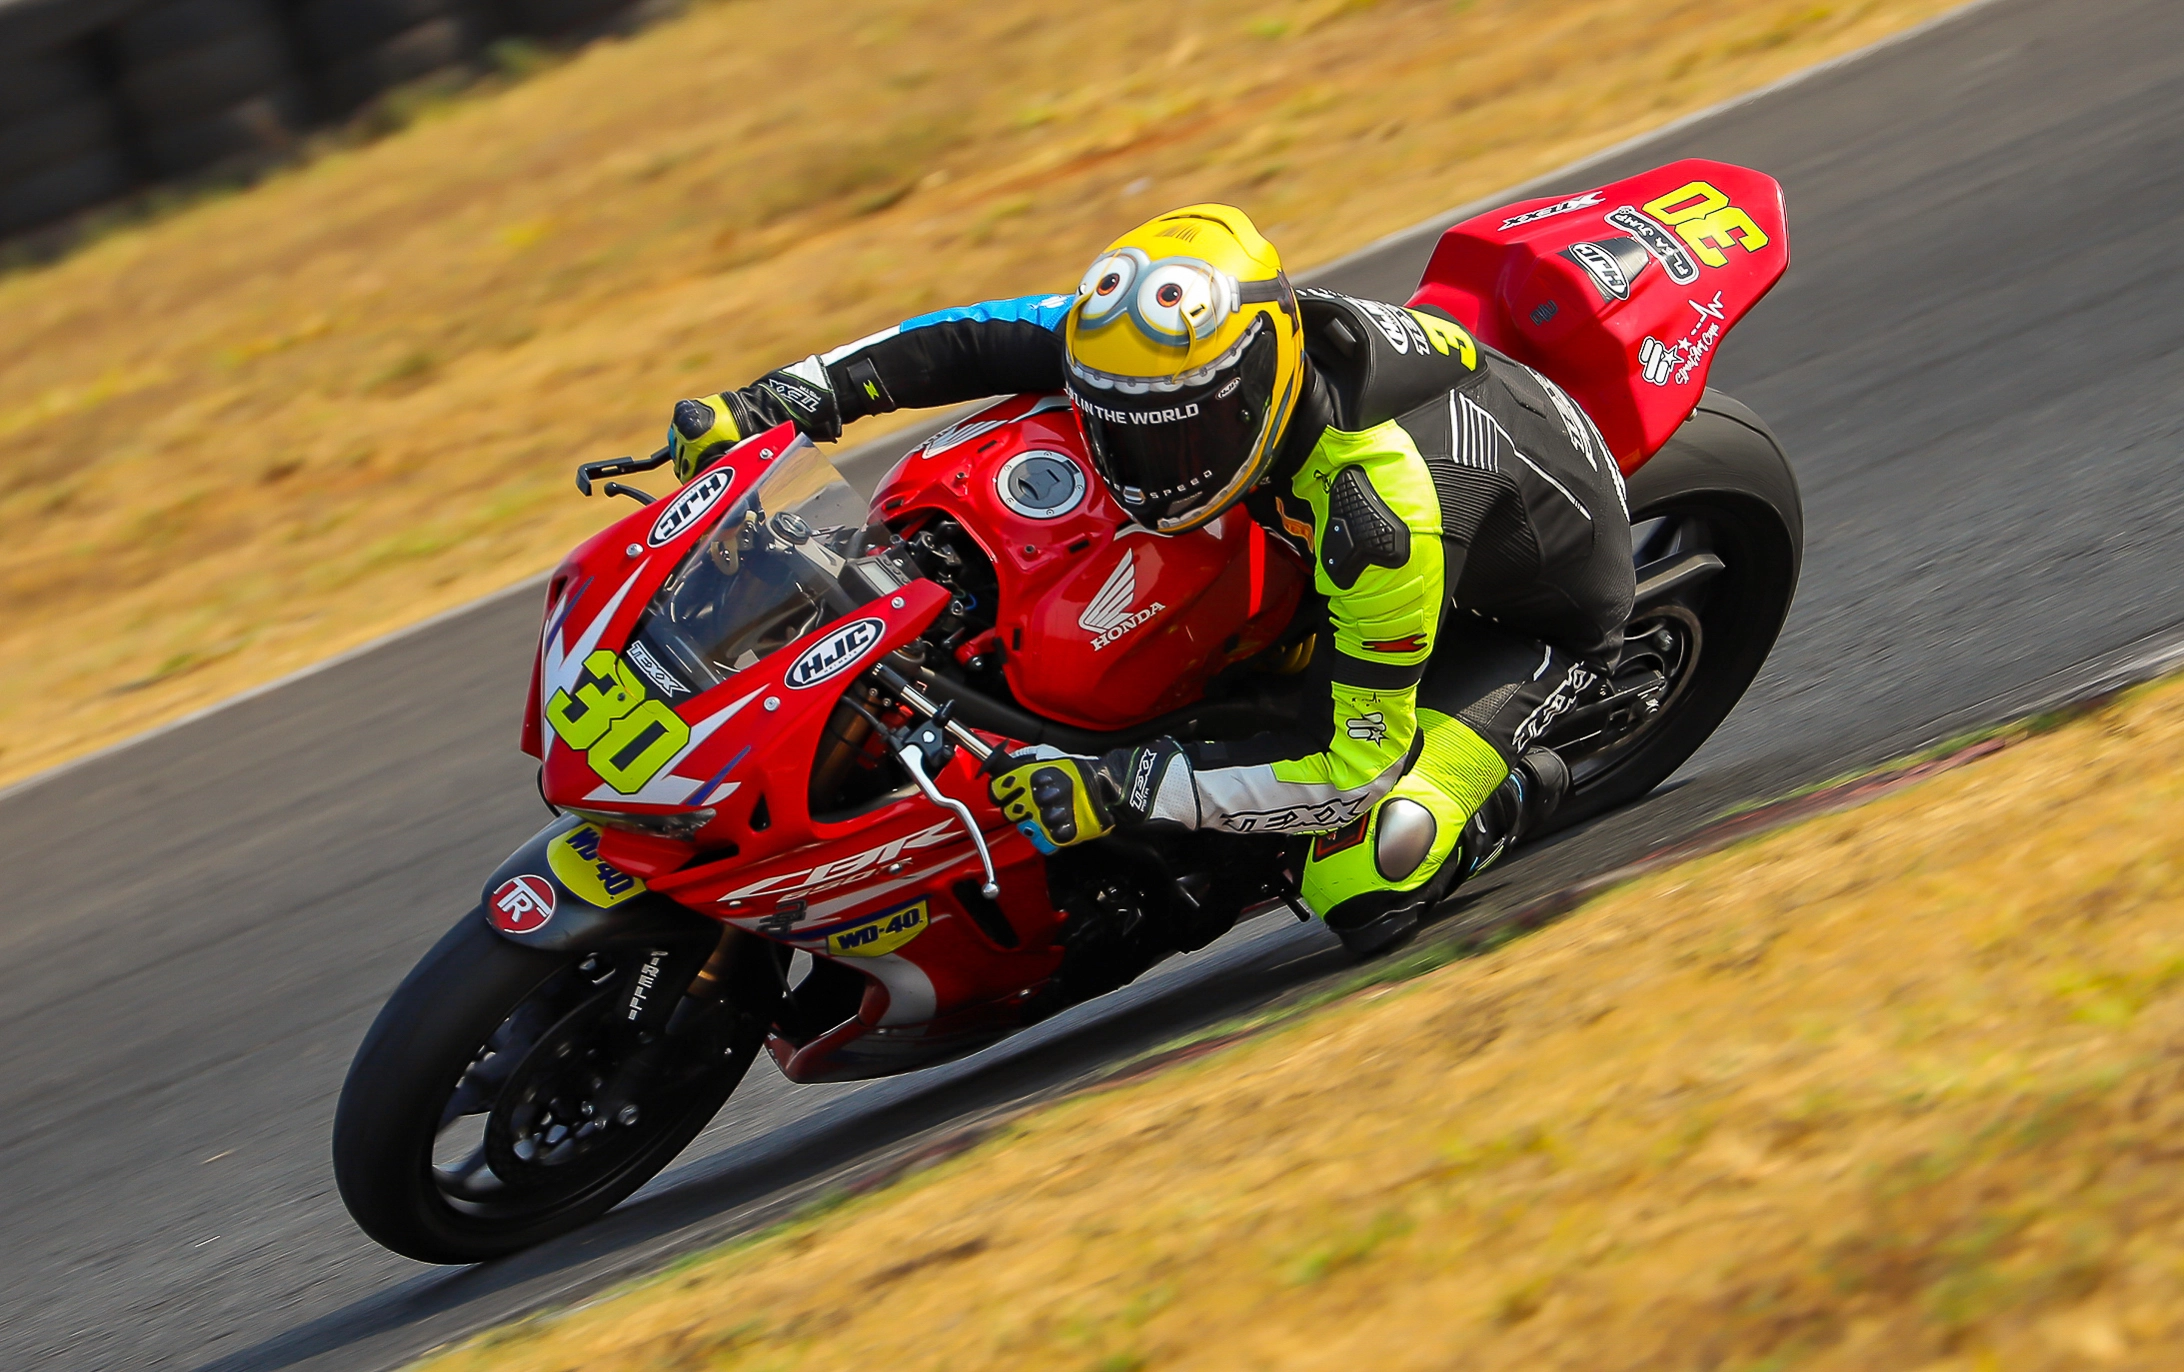 Espanhol de Superbike – Etapa em Portugal tem transmissão no  Honda  Motos Brasil